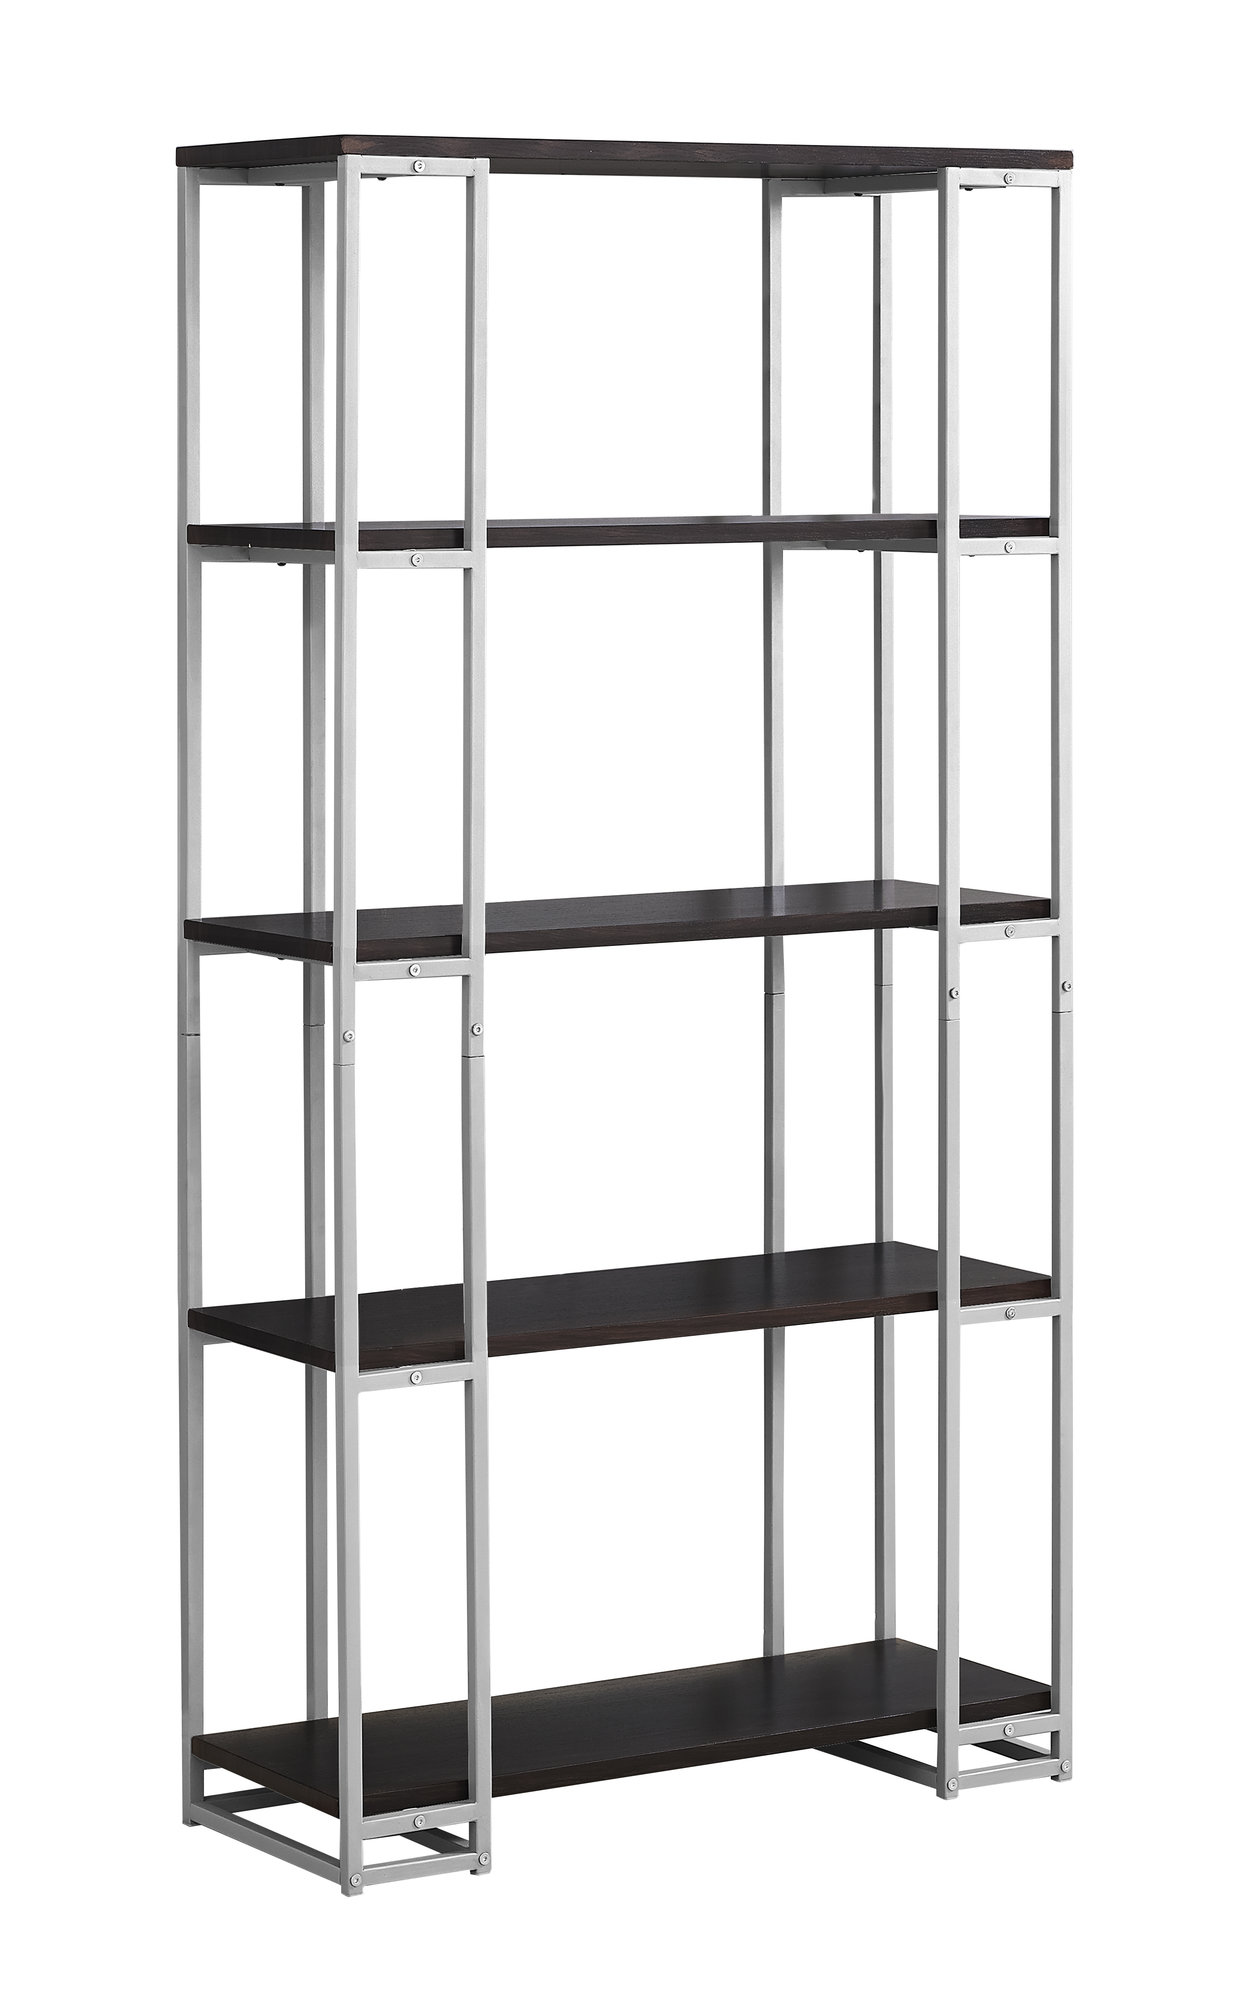 12.5" x 32" x 62" Cappuccino Silver Mdf Metal Bookcase